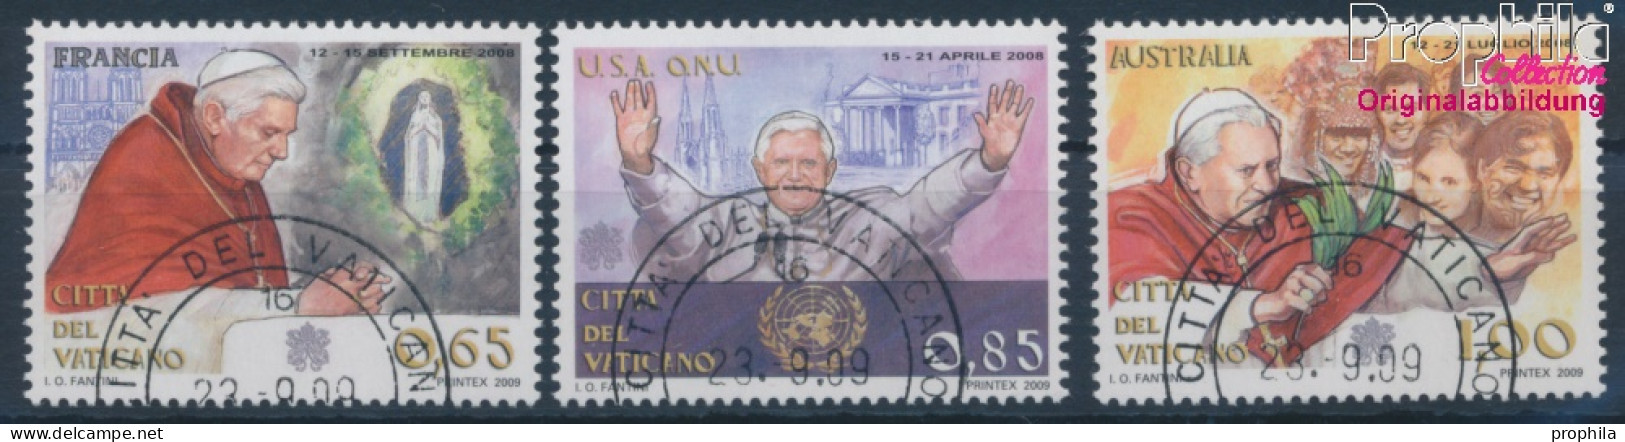 Vatikanstadt 1645-1647 (kompl.Ausg.) Gestempelt 2009 Papstreisen 2008 (10352414 - Used Stamps